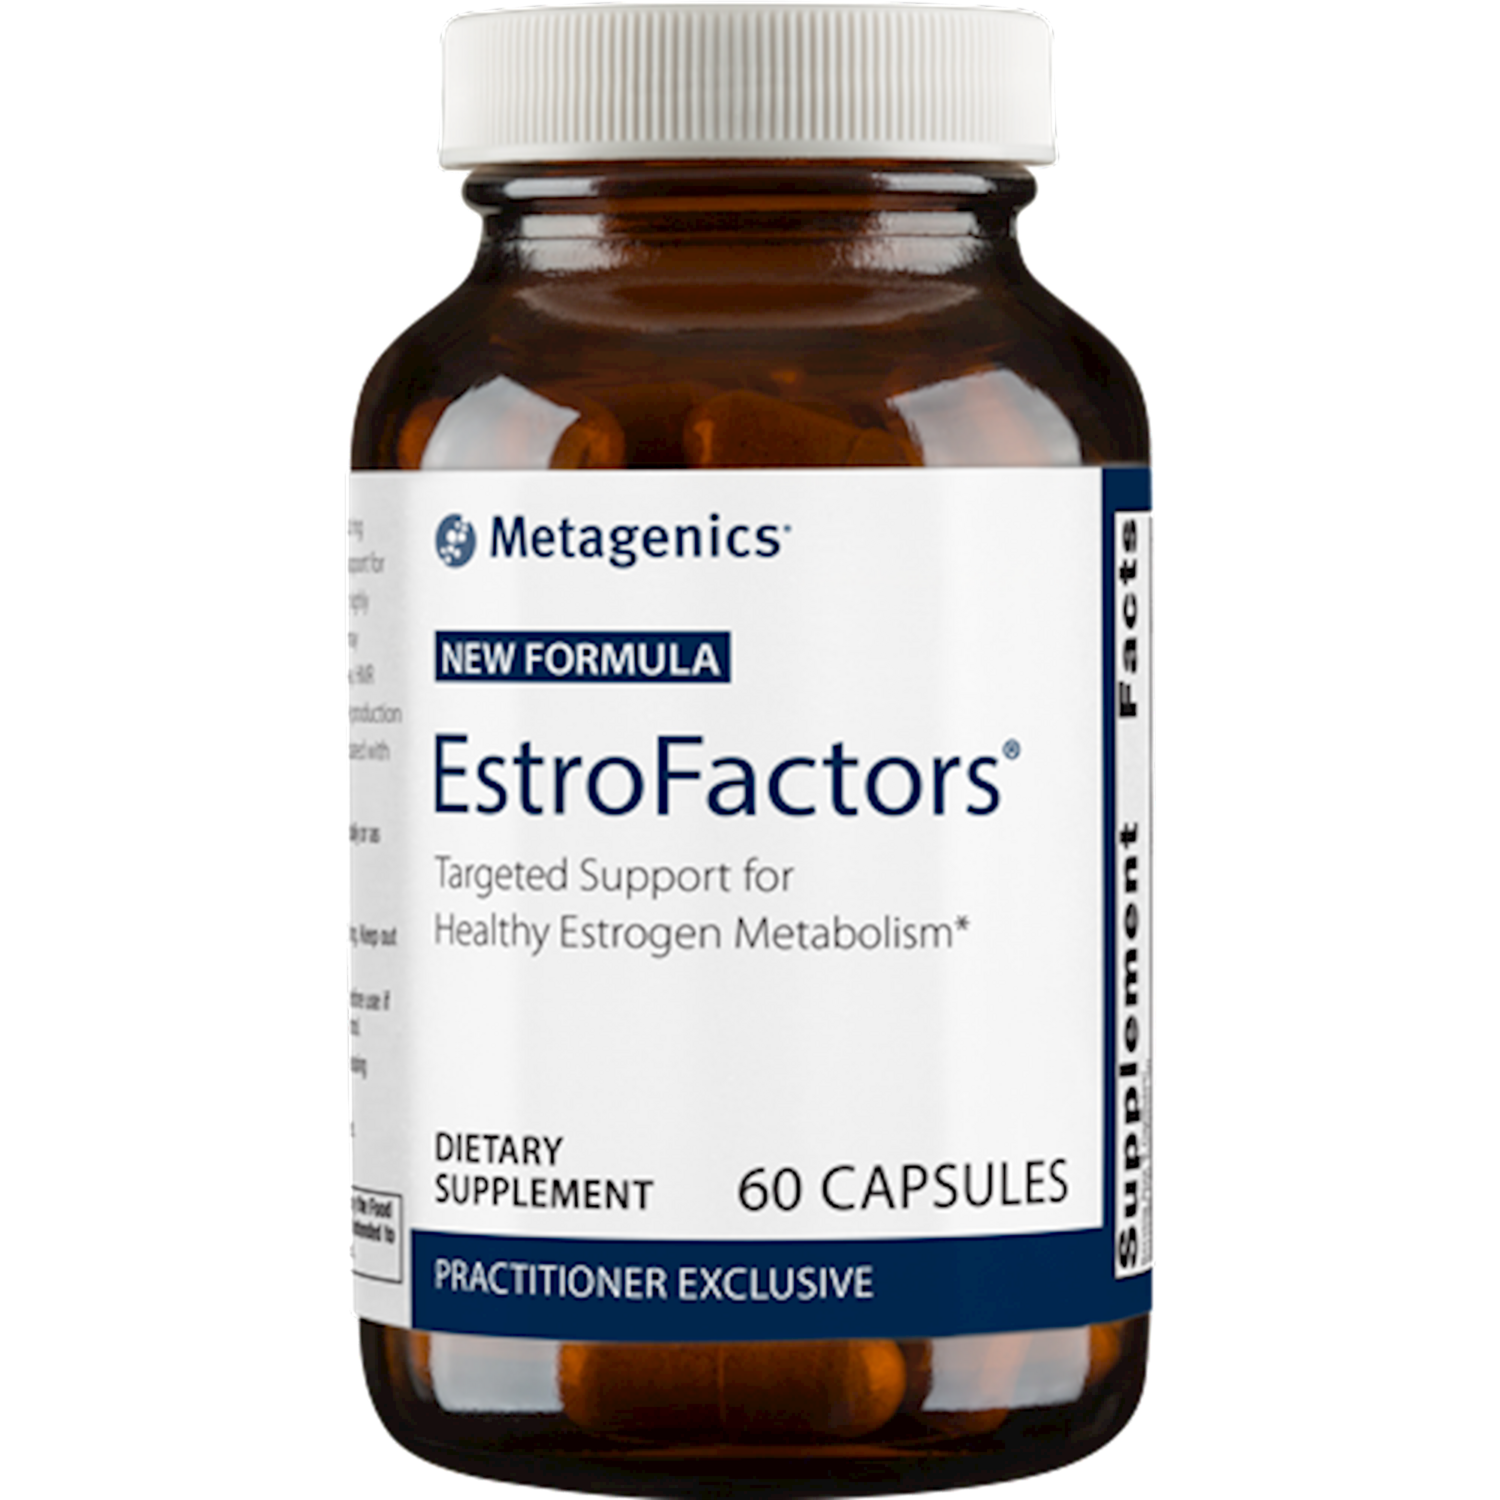 EstroFactors 60 caps Metagenics